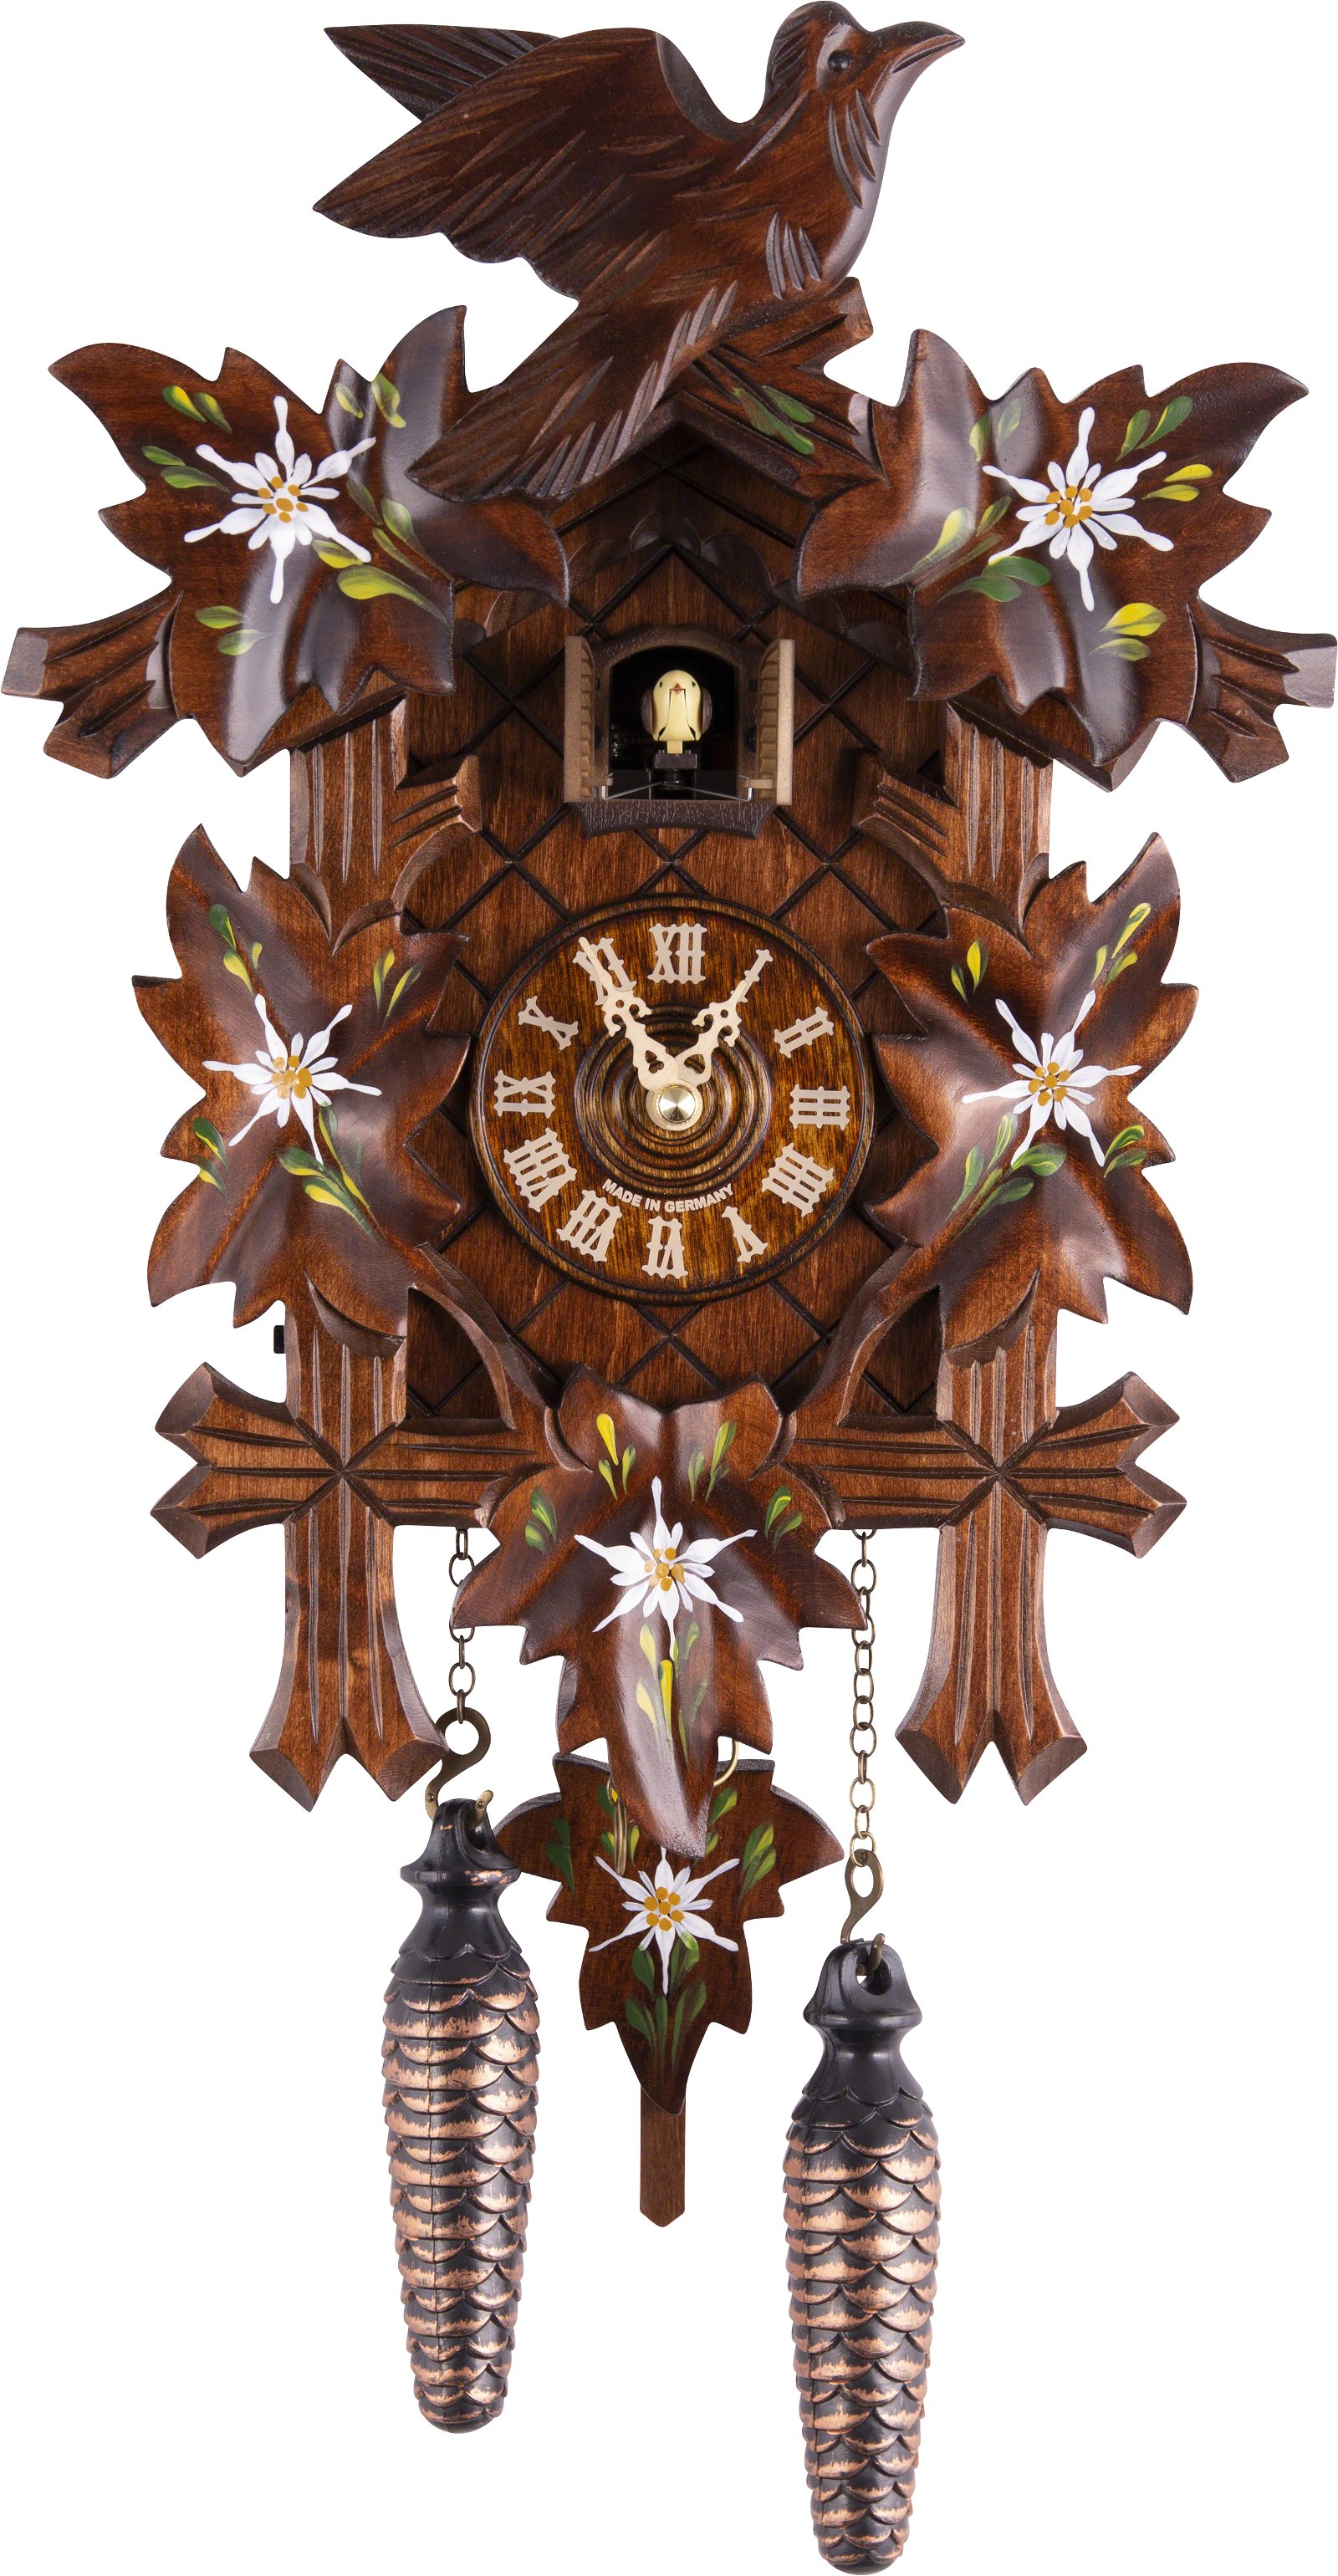 Kuckucksuhr Quarz-Uhrwerk geschnitzt 35cm von Trenkle Uhren